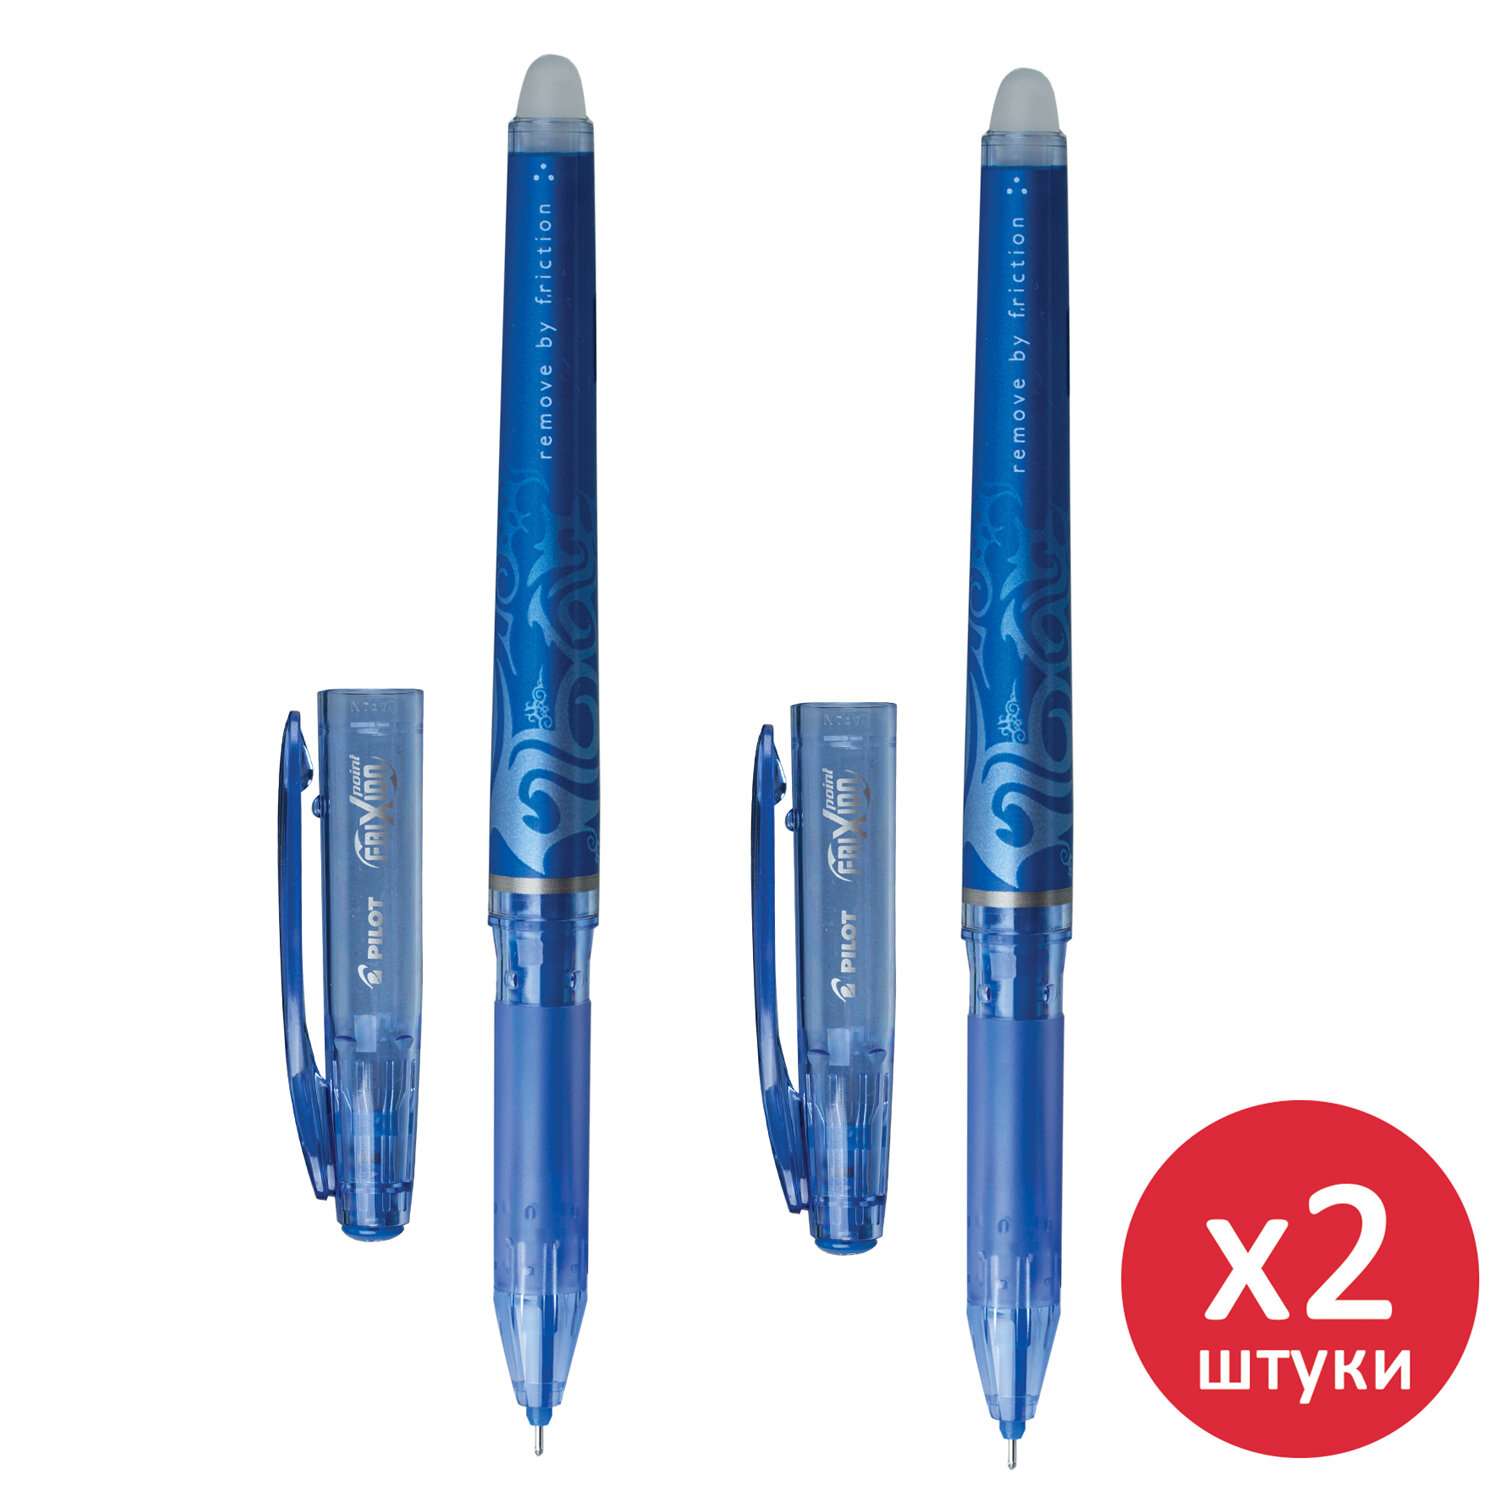 Ручки гелевые PILOT синие пиши стирай 2 штуки - фото 1